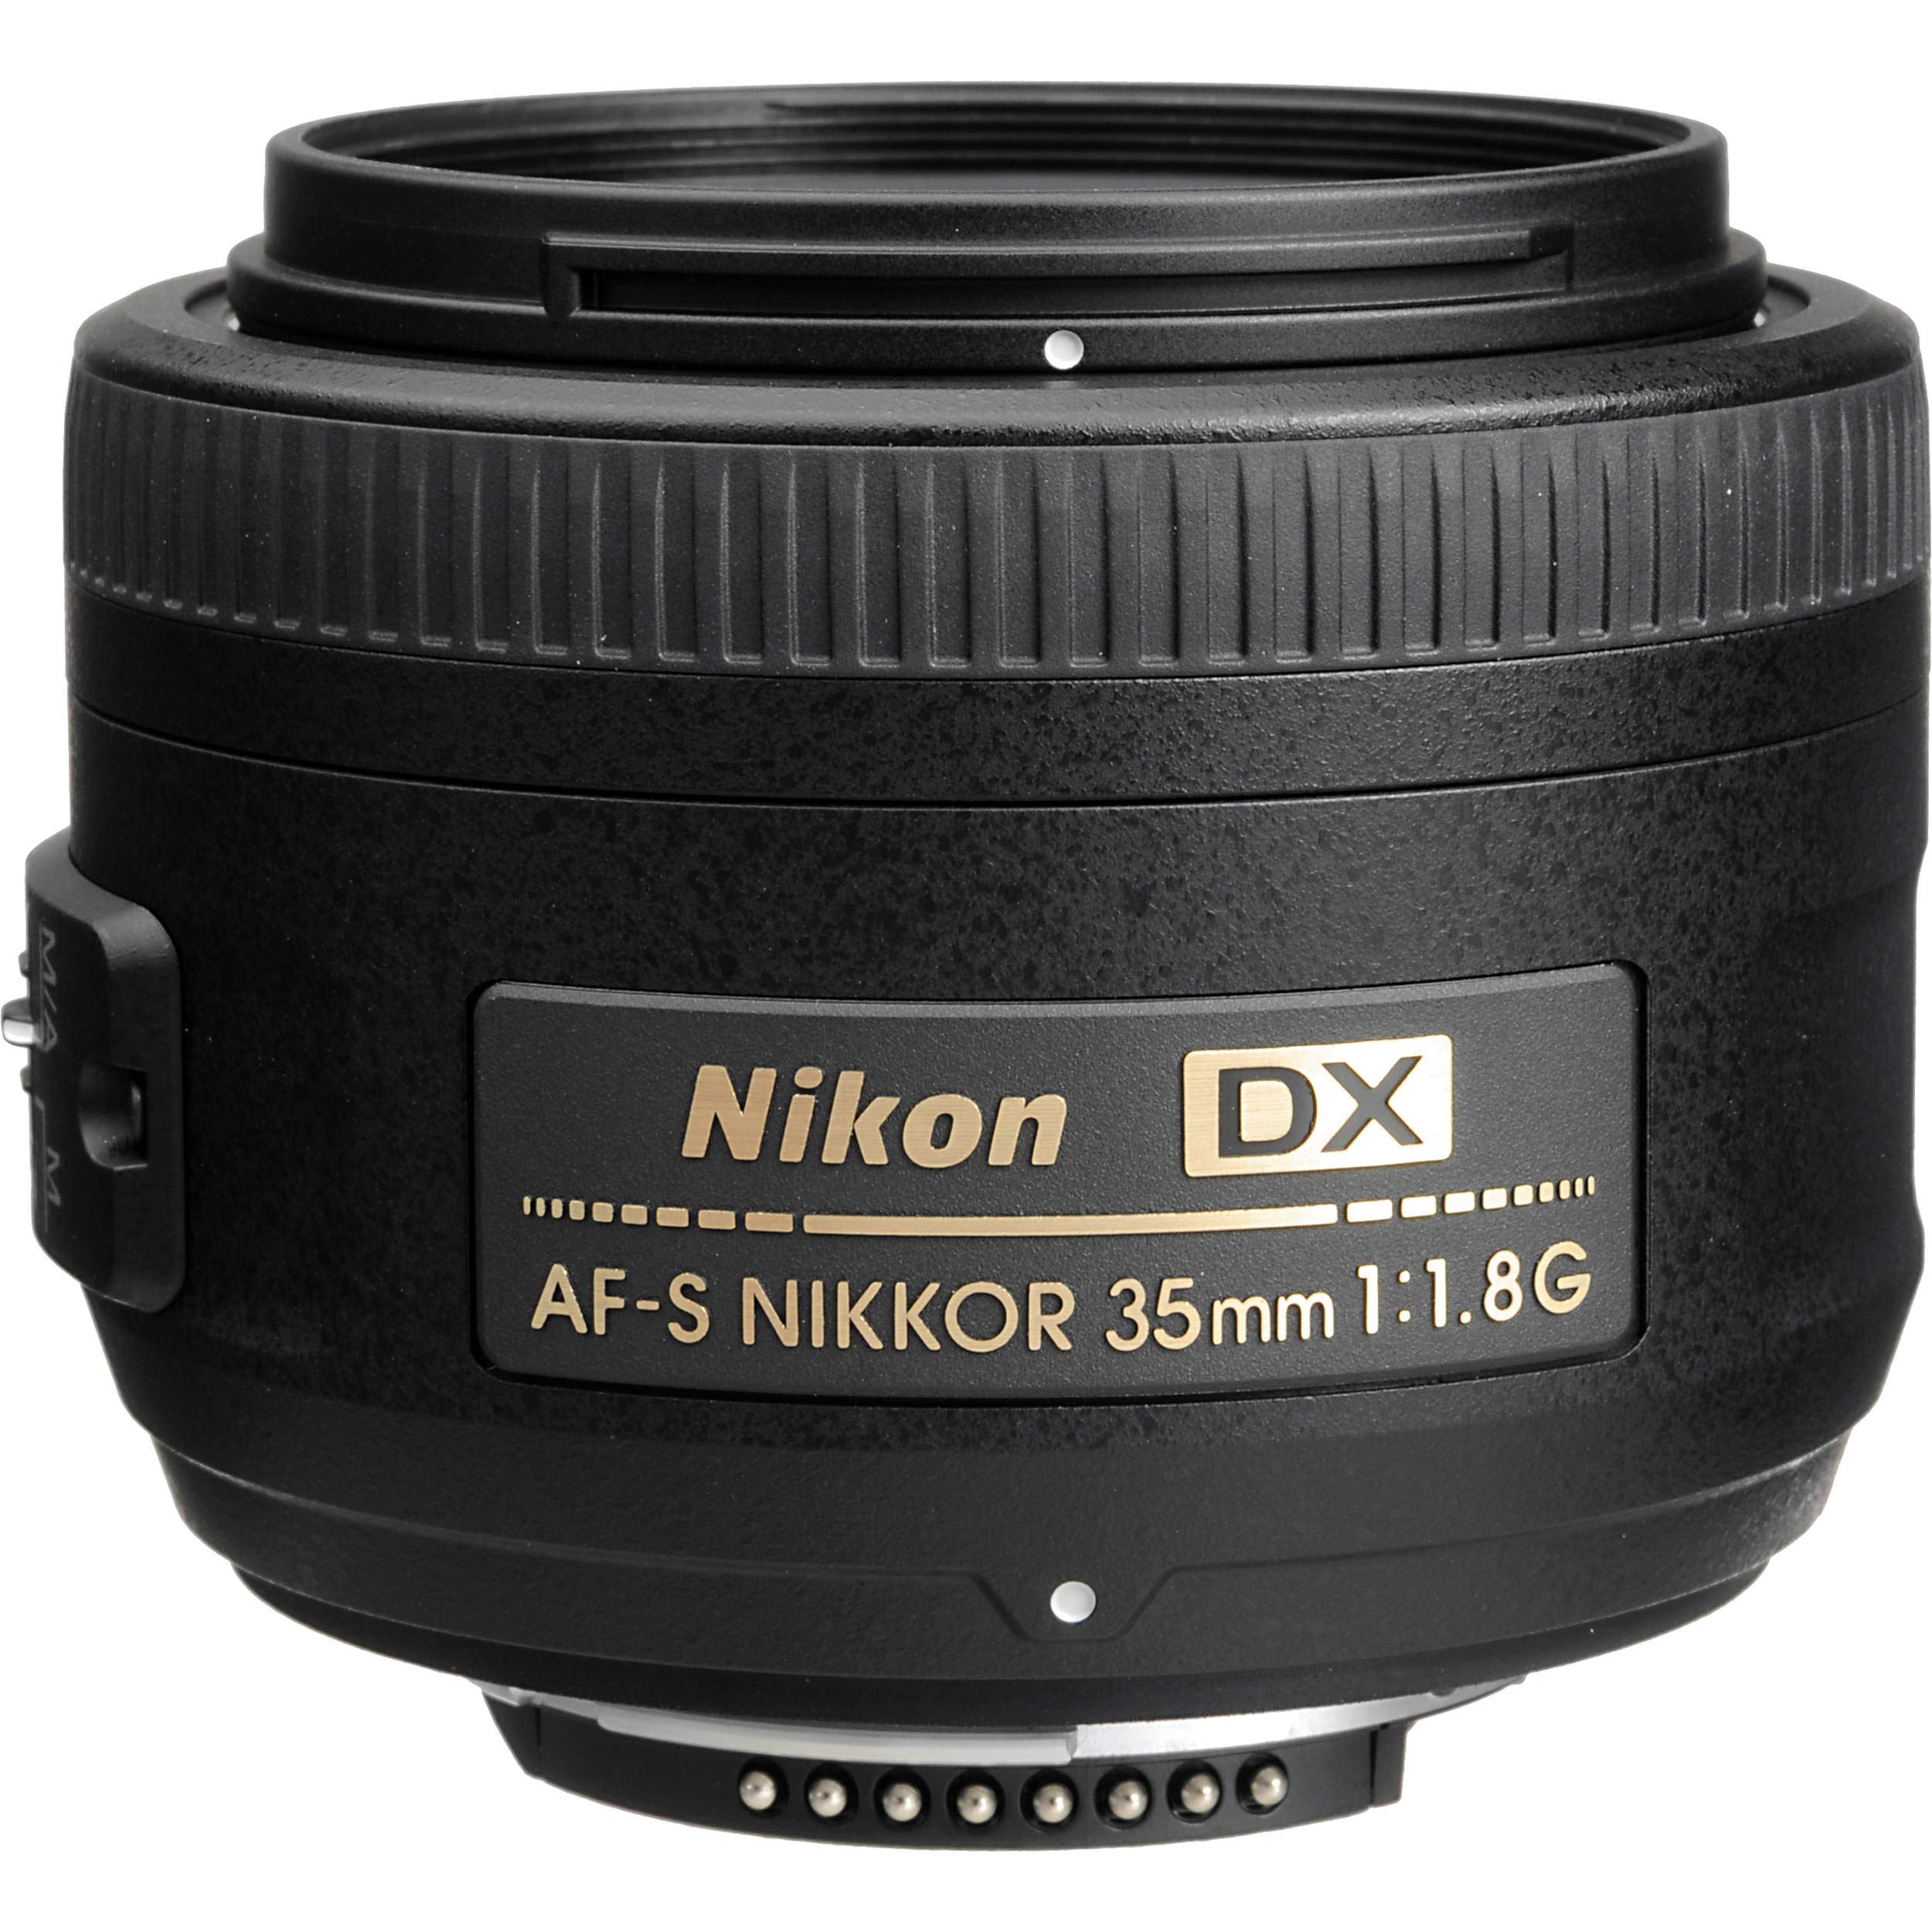 Nikon AF-S DX NIKKOR 35mm f/1.8G Lens + 3pcs UV Lens Filter Kit + Cleaning Kit